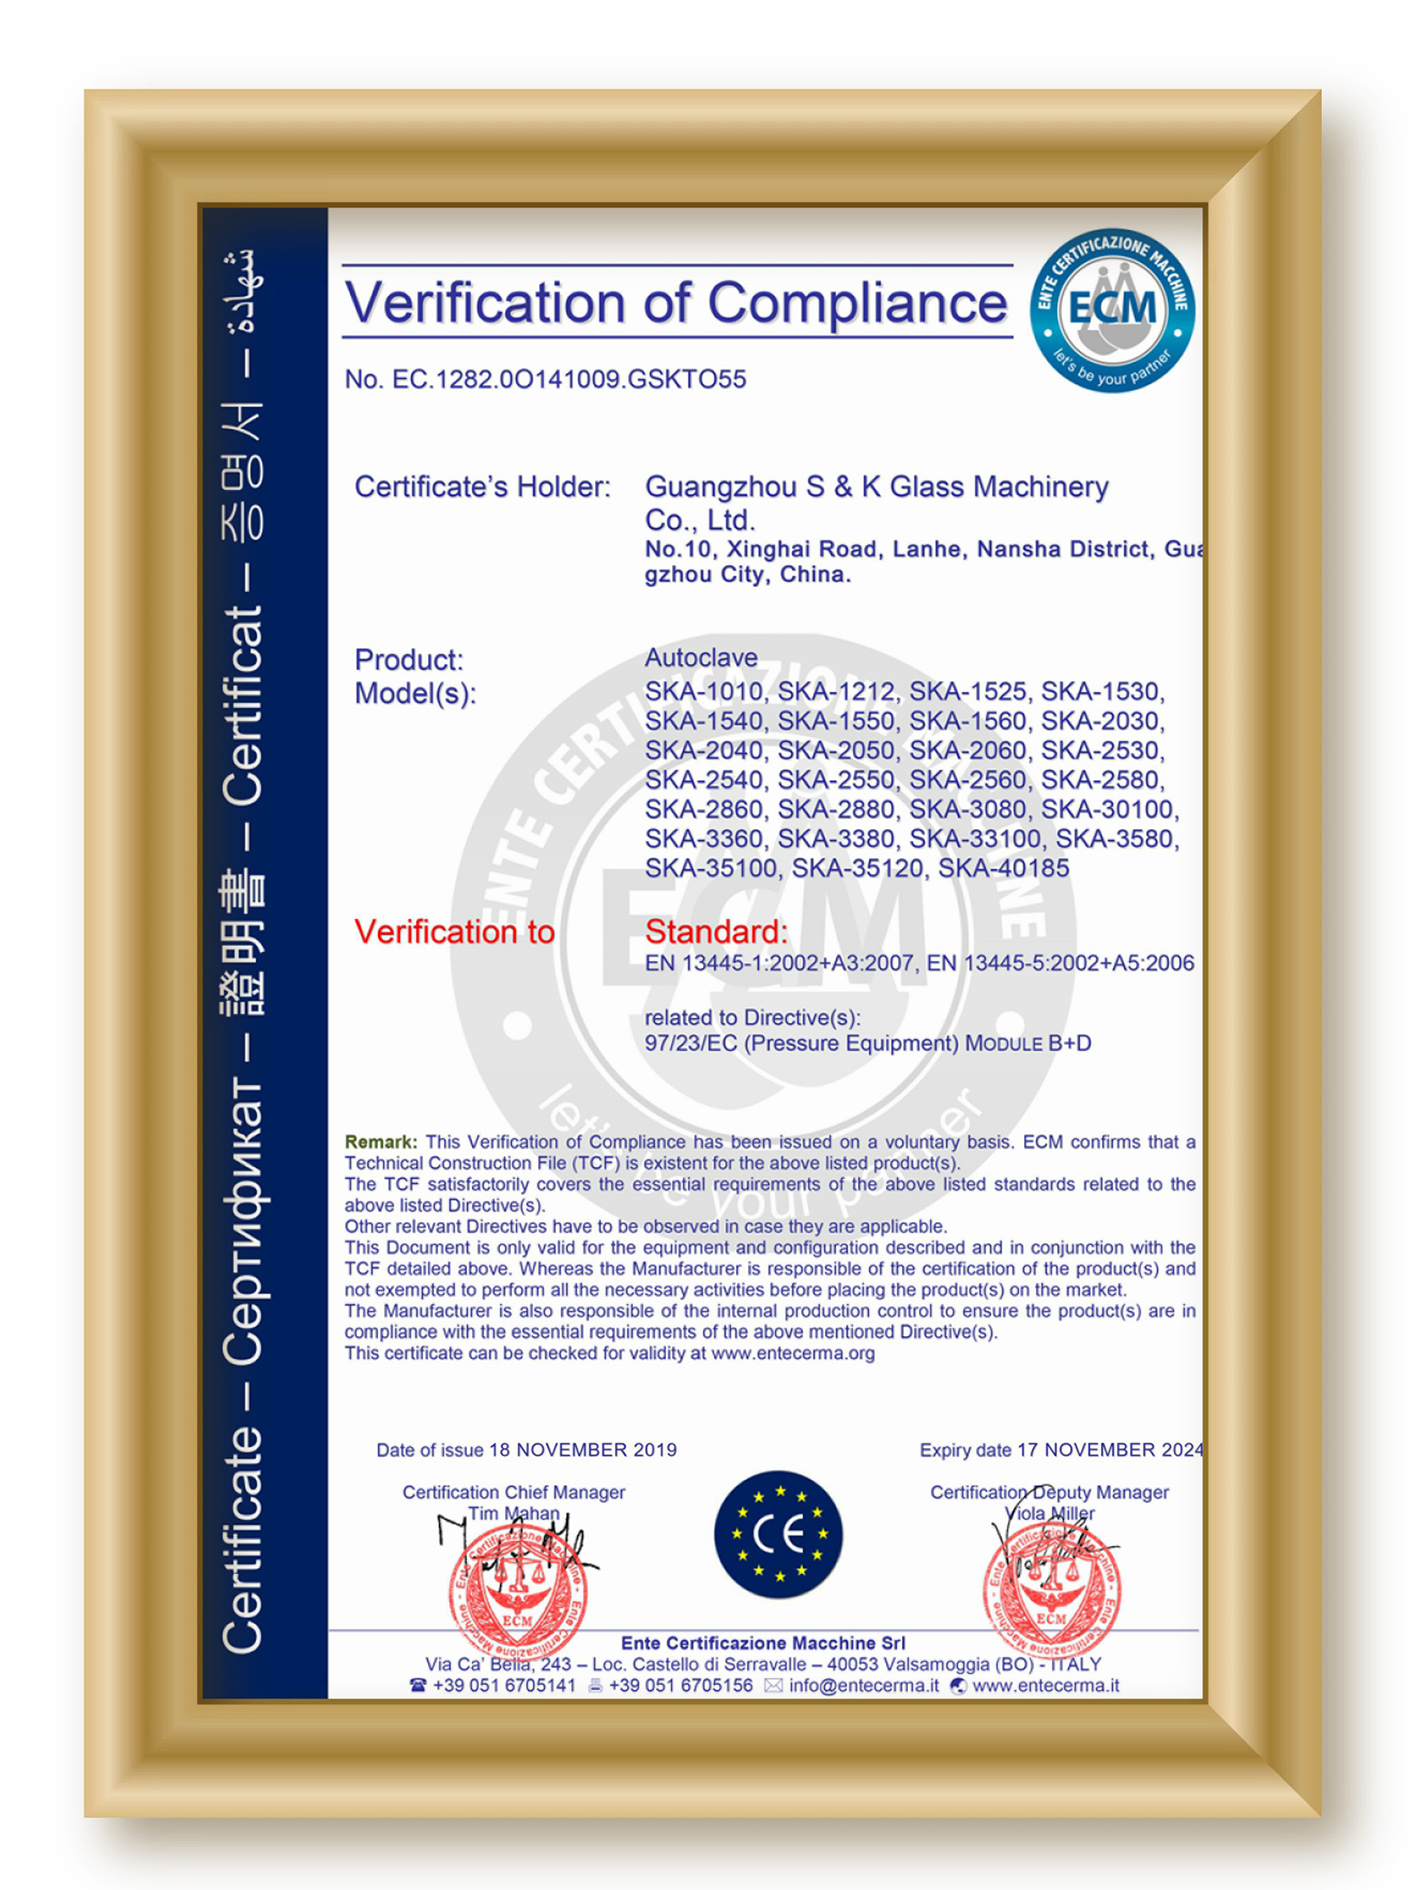 CE certificate of Autoclave